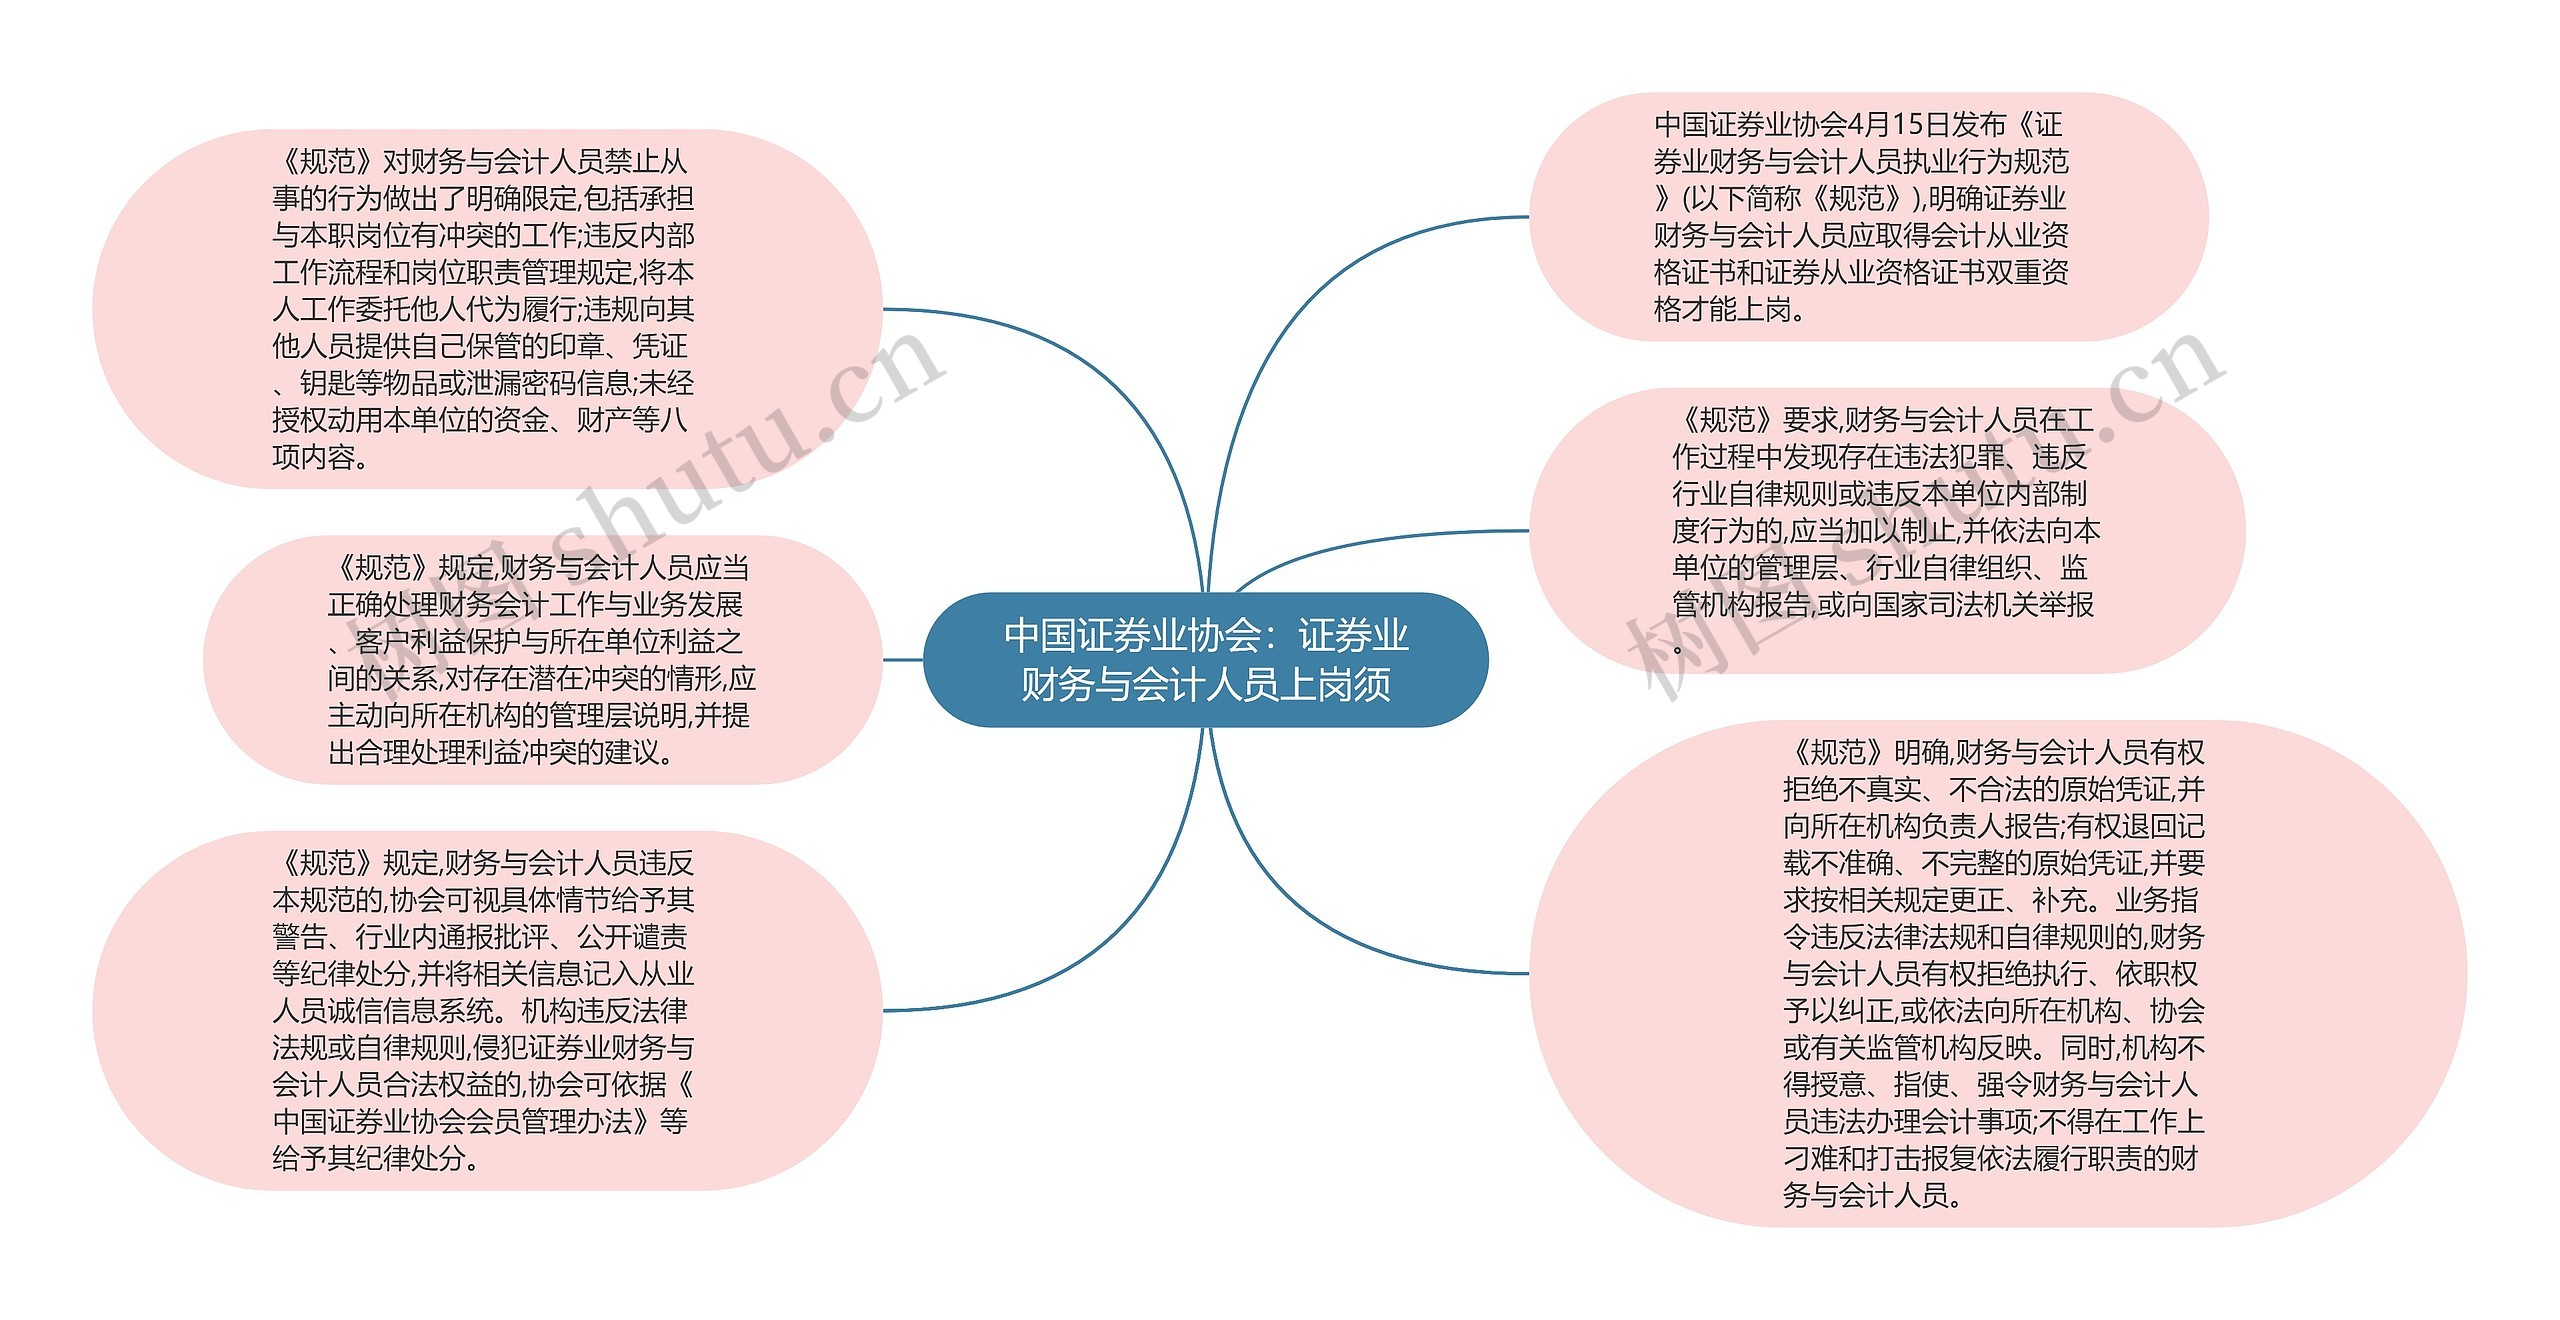 中国证券业协会：证券业财务与会计人员上岗须